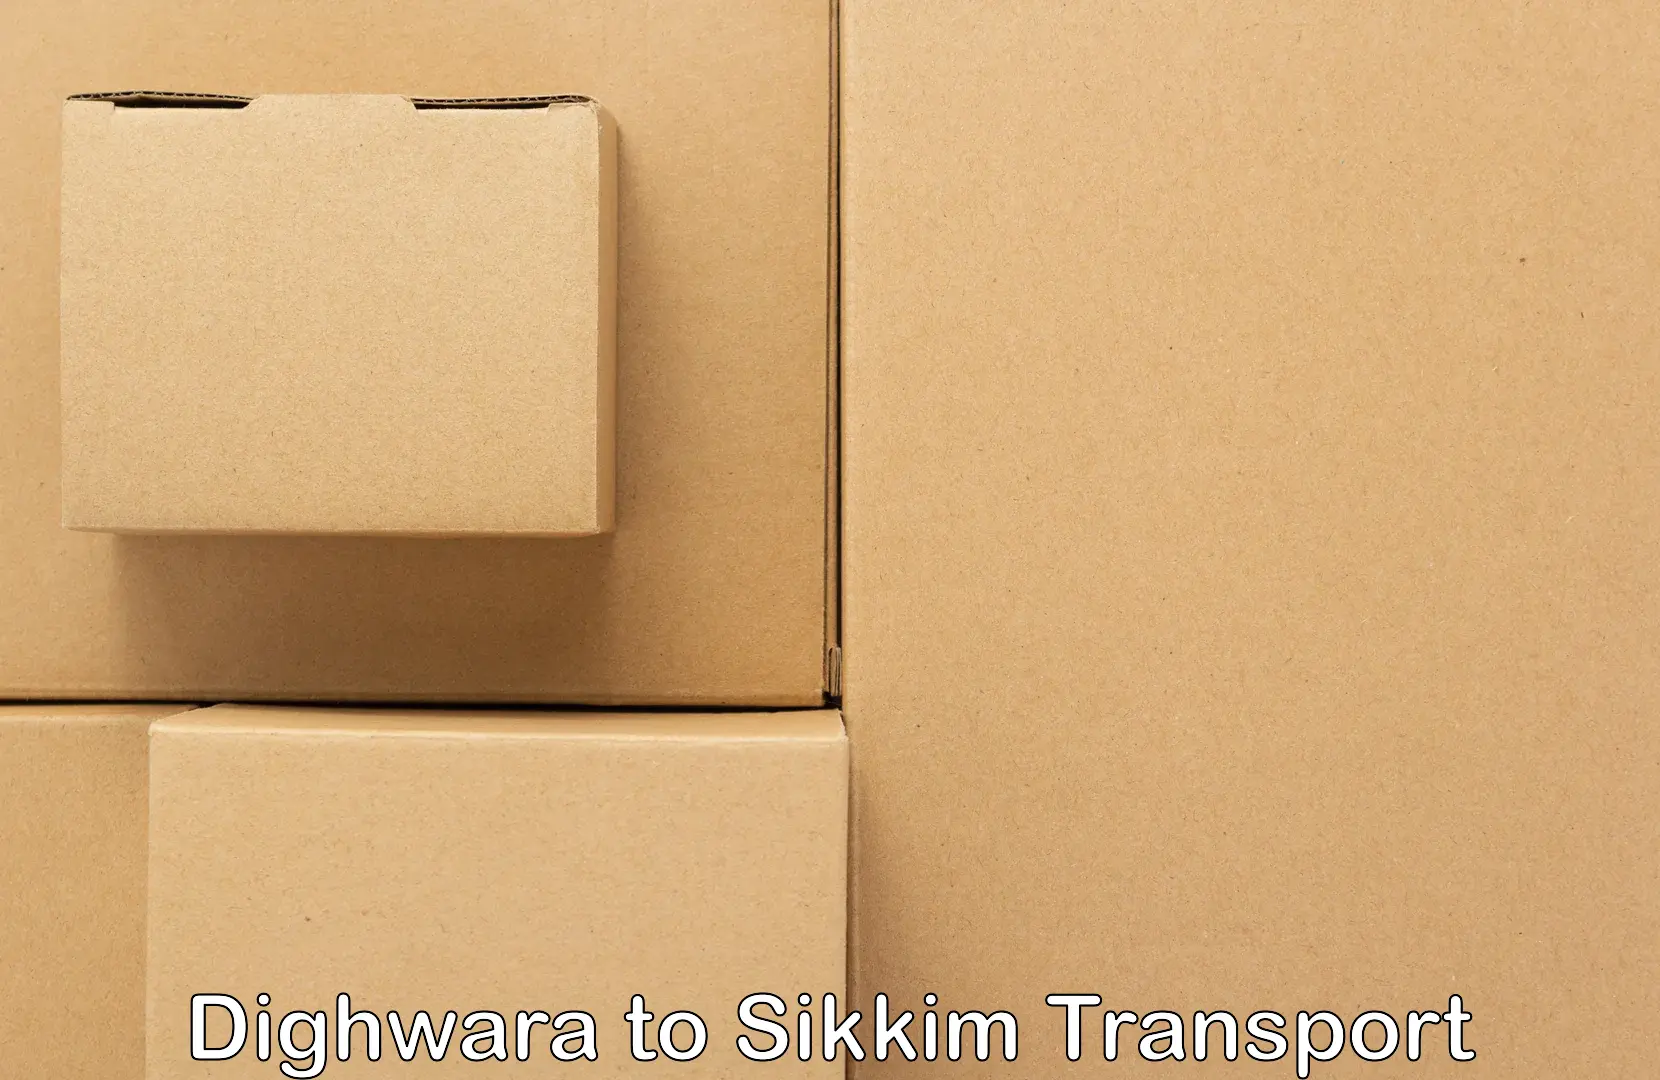 Shipping partner Dighwara to South Sikkim